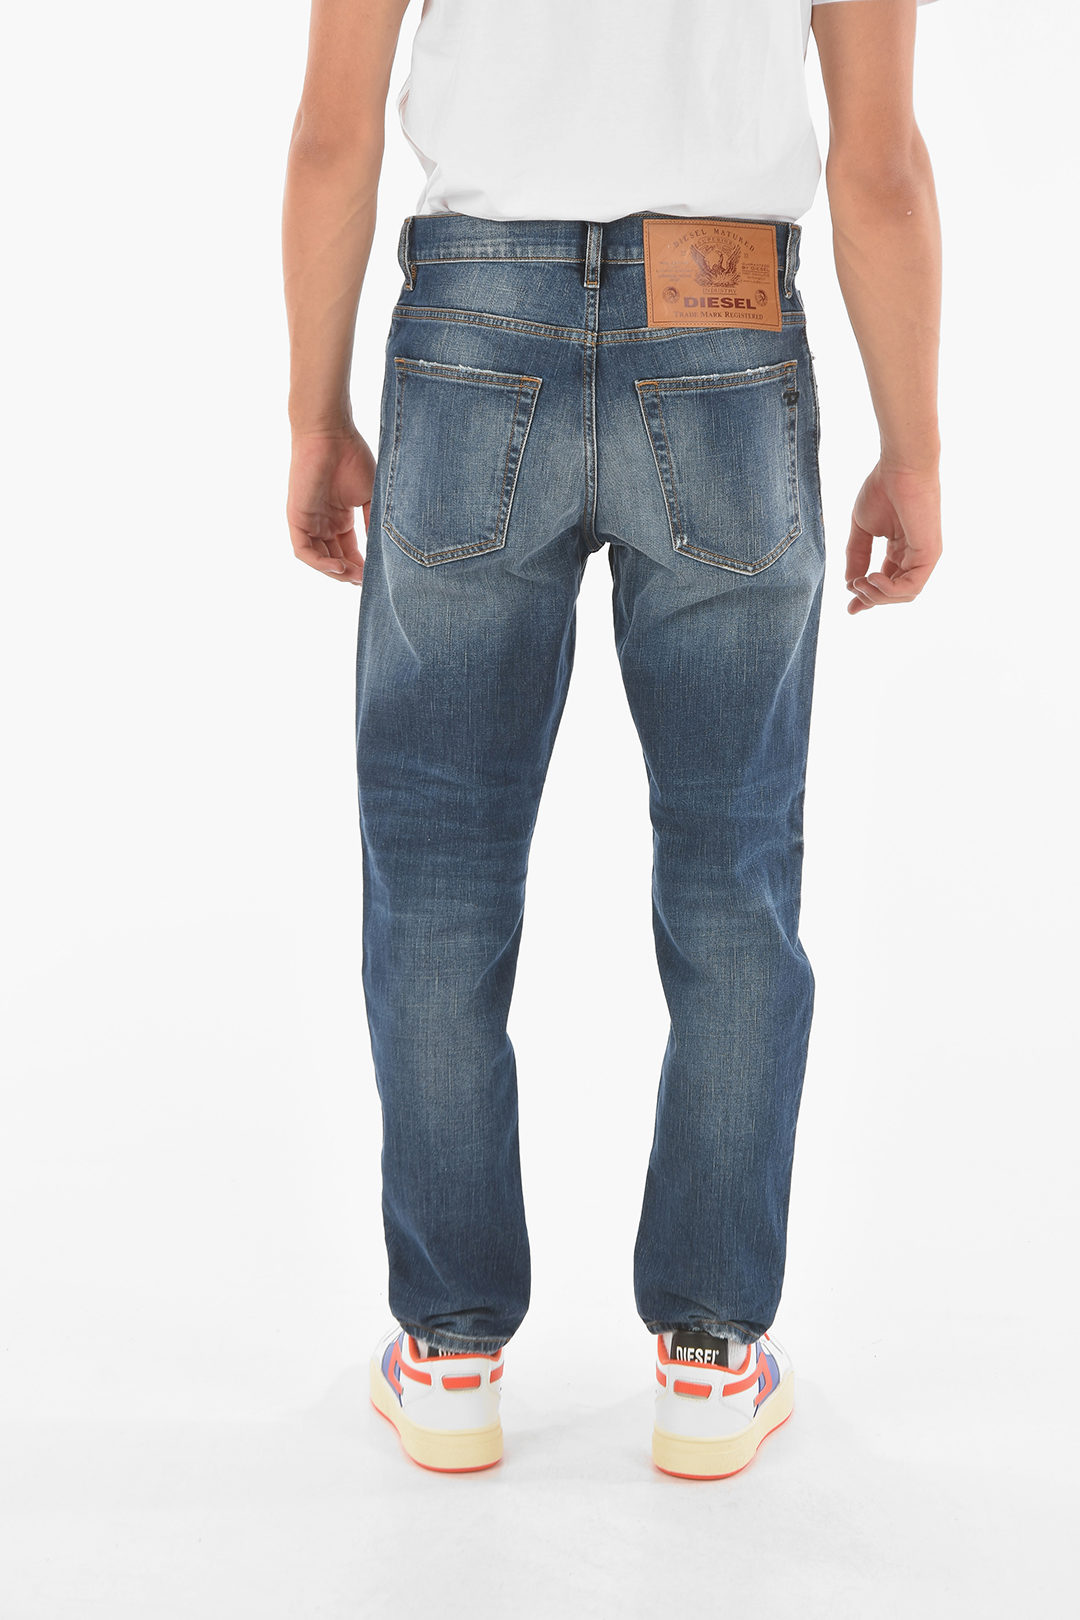 Deskundige Savant Verniel Diesel 17cm visible stitching D-FINING Tapered fit Jeans L32 men - Glamood  Outlet